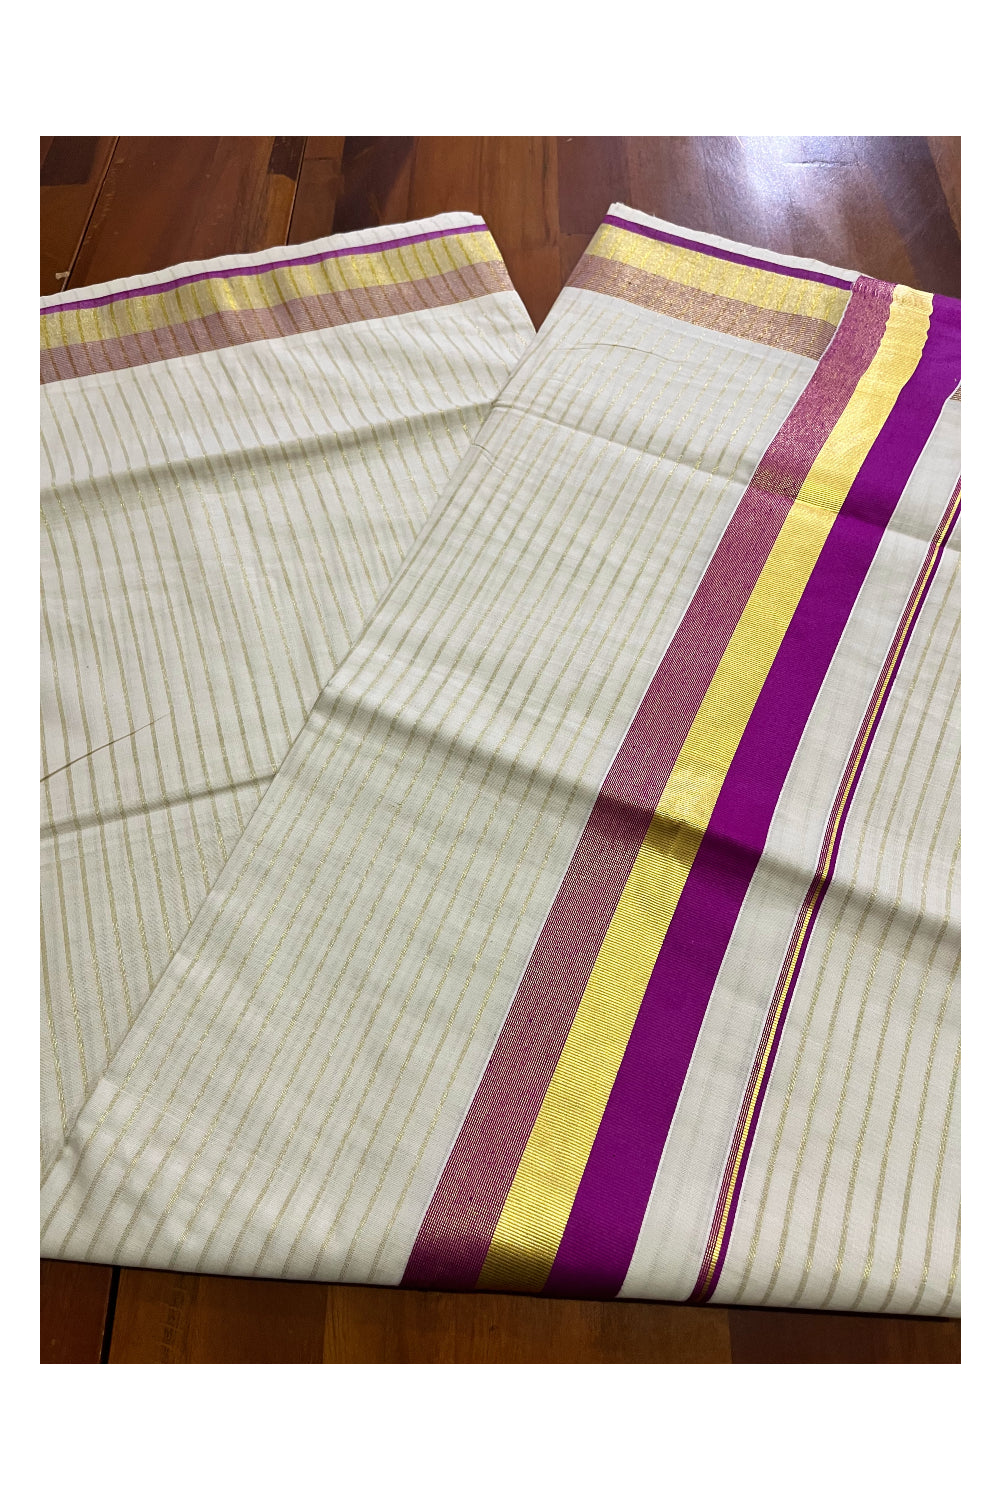 Pure Cotton Kerala Kasavu Lines Design Saree with Magenta Border